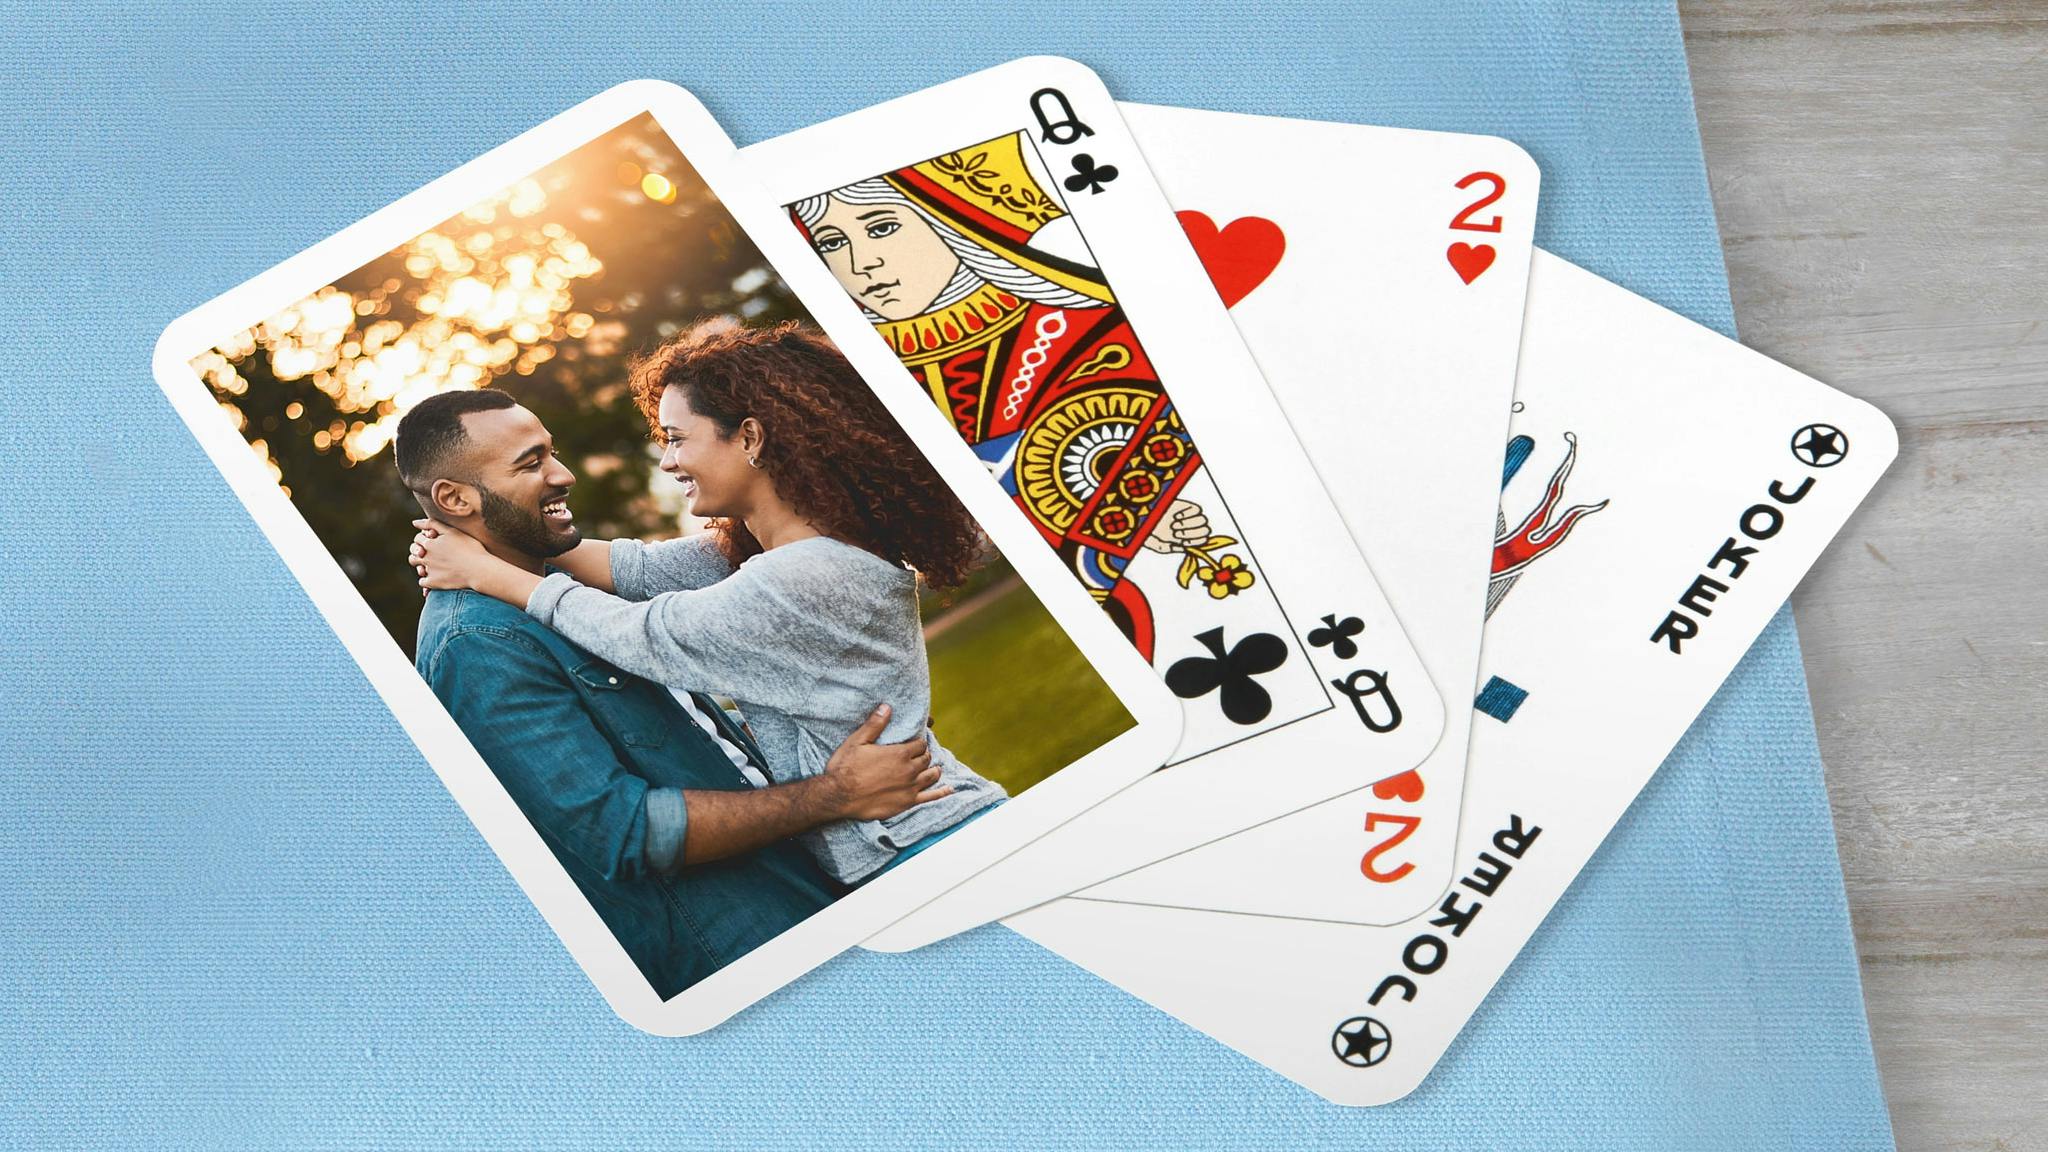 Pokerkarten mit einem Pärchenfoto auf einer blauen Decke